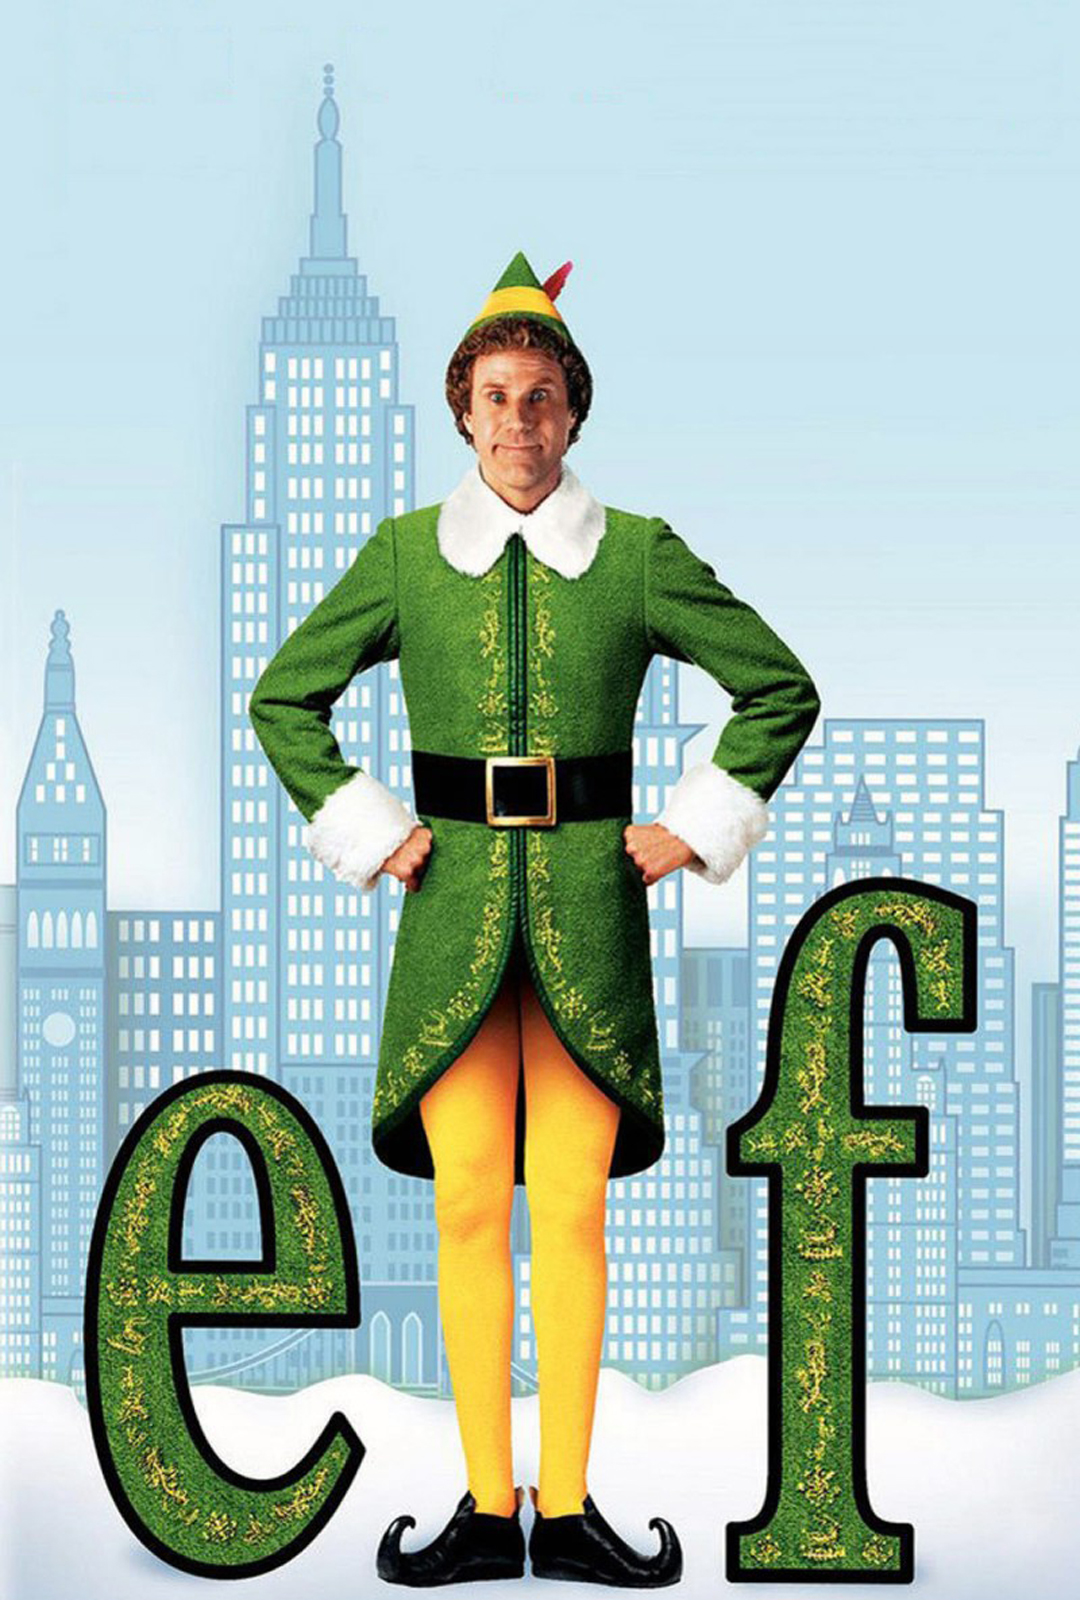 elf-movie-poster.jpg